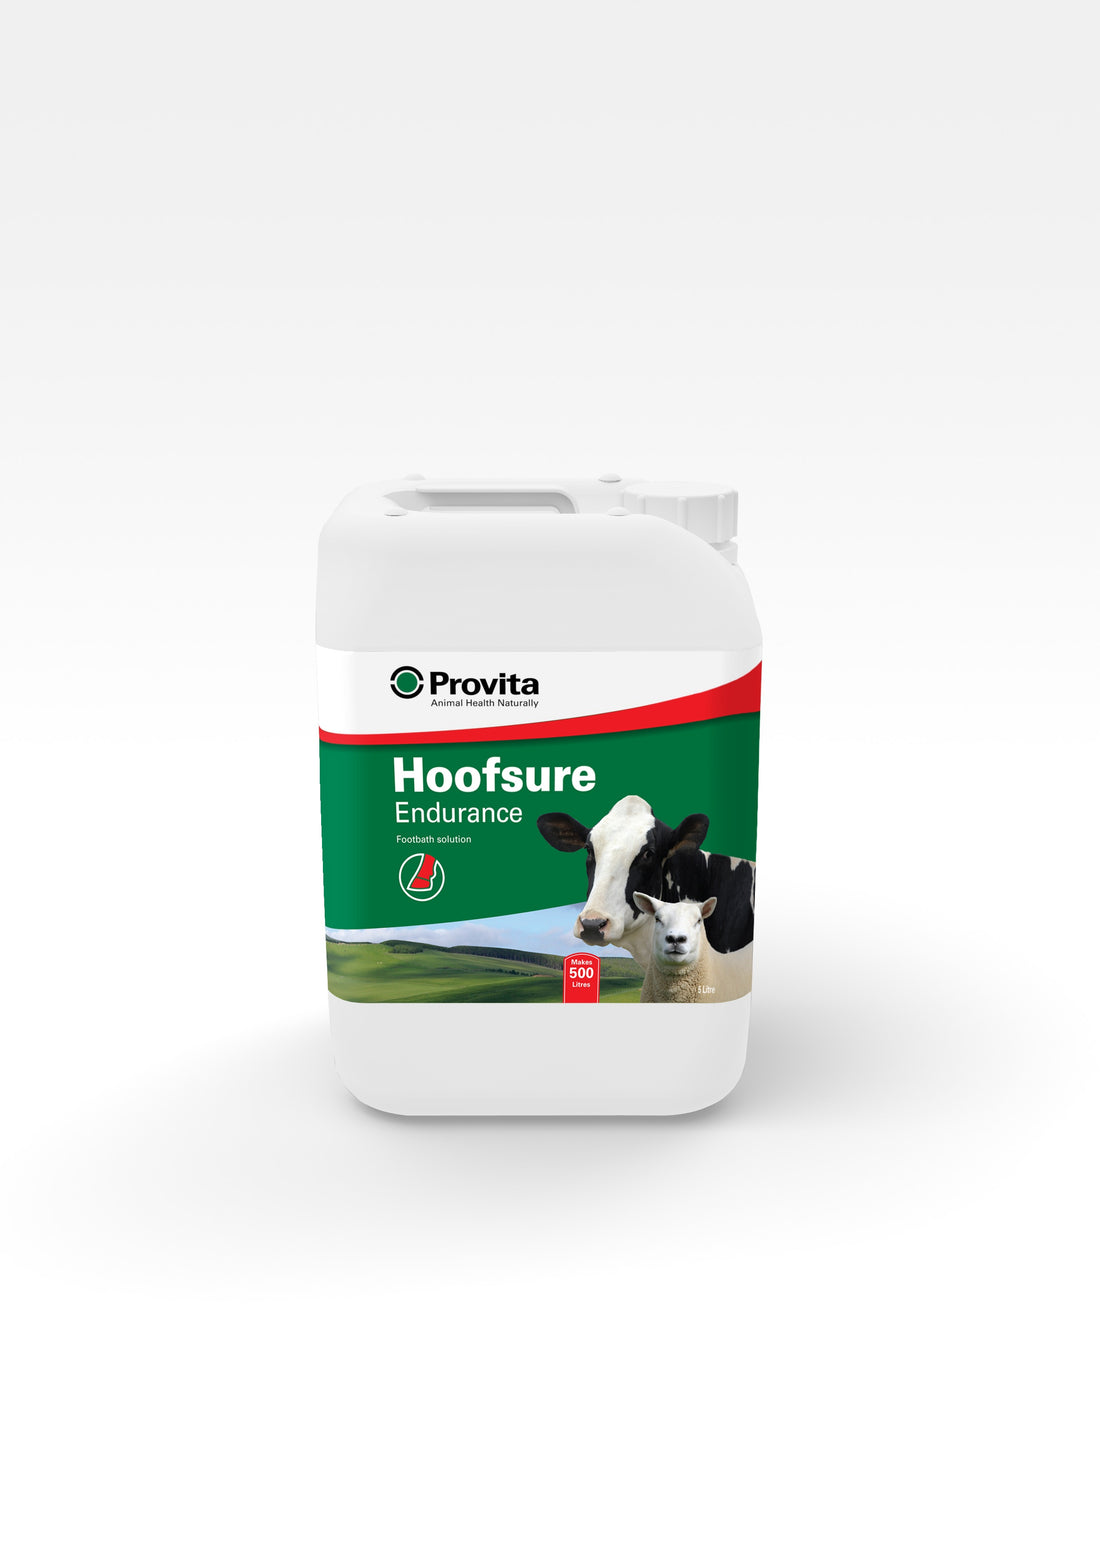 Provita Hoofsure Endurance – Footbath Solution